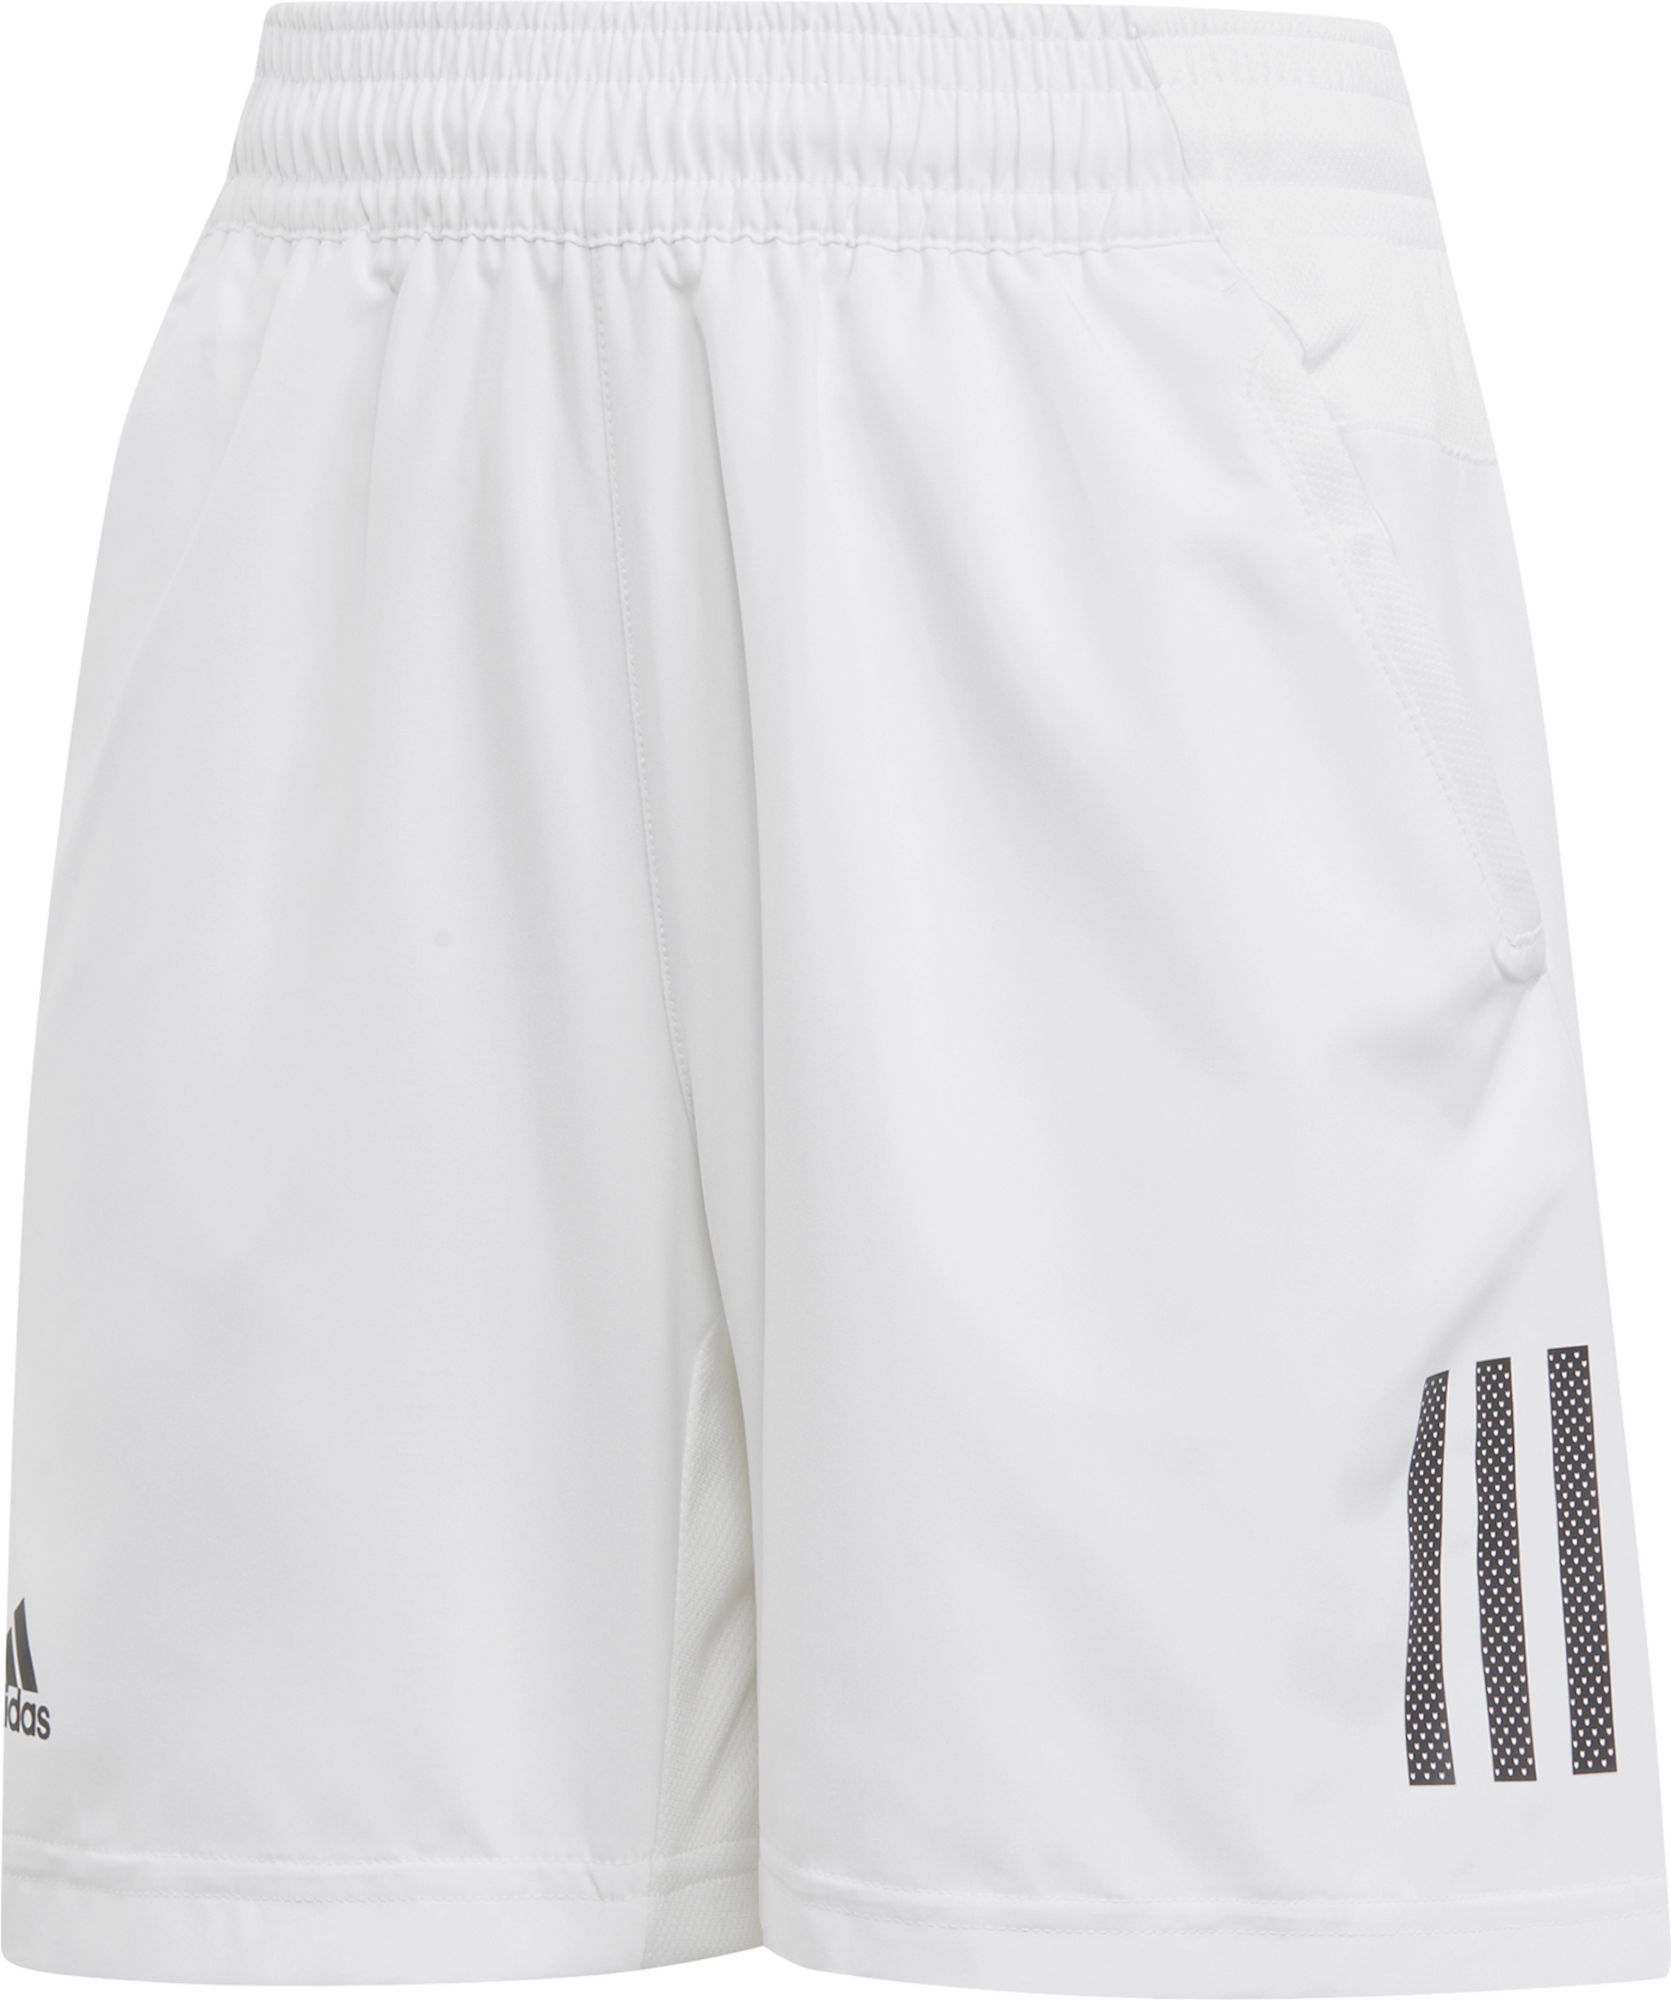 Adidas Boys Club 3-Stripes Shorts White 116